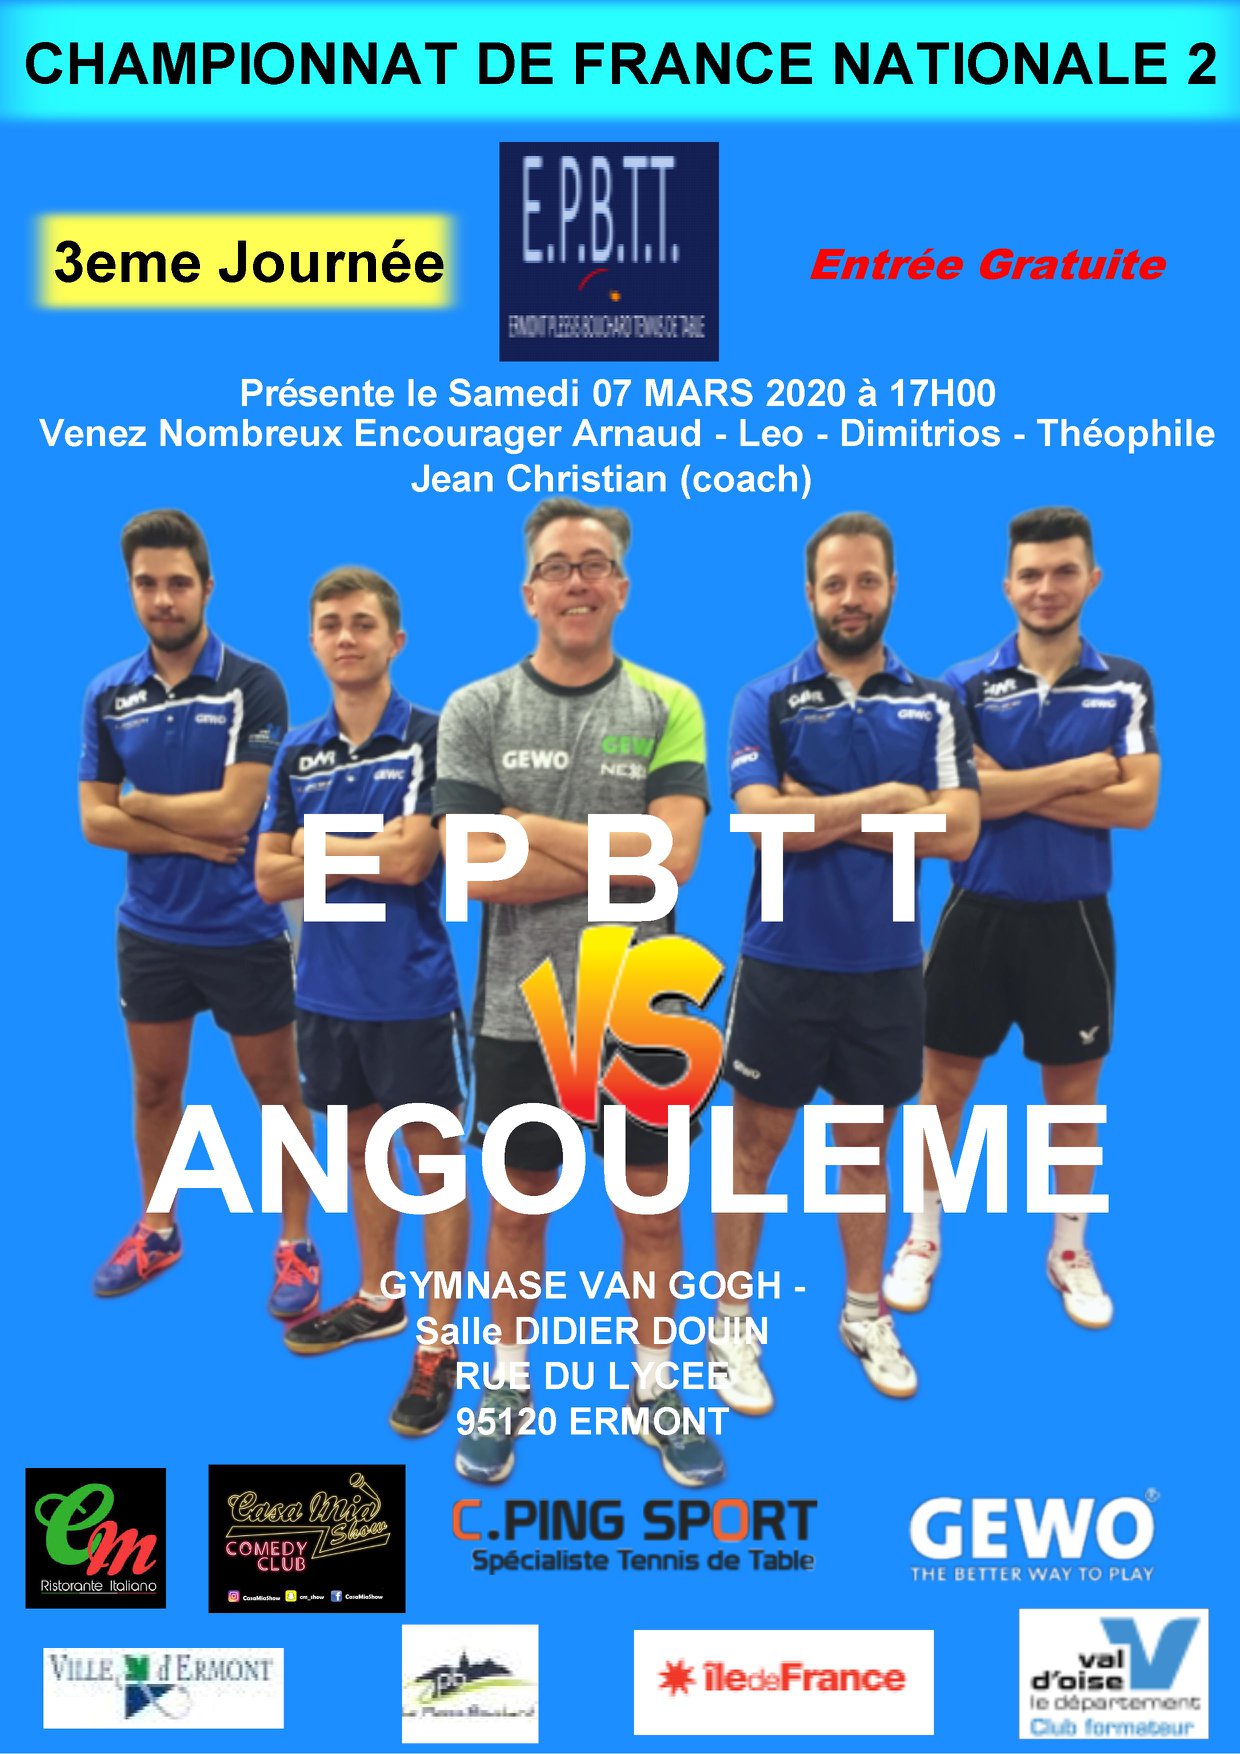 EPBTT - Angoulème